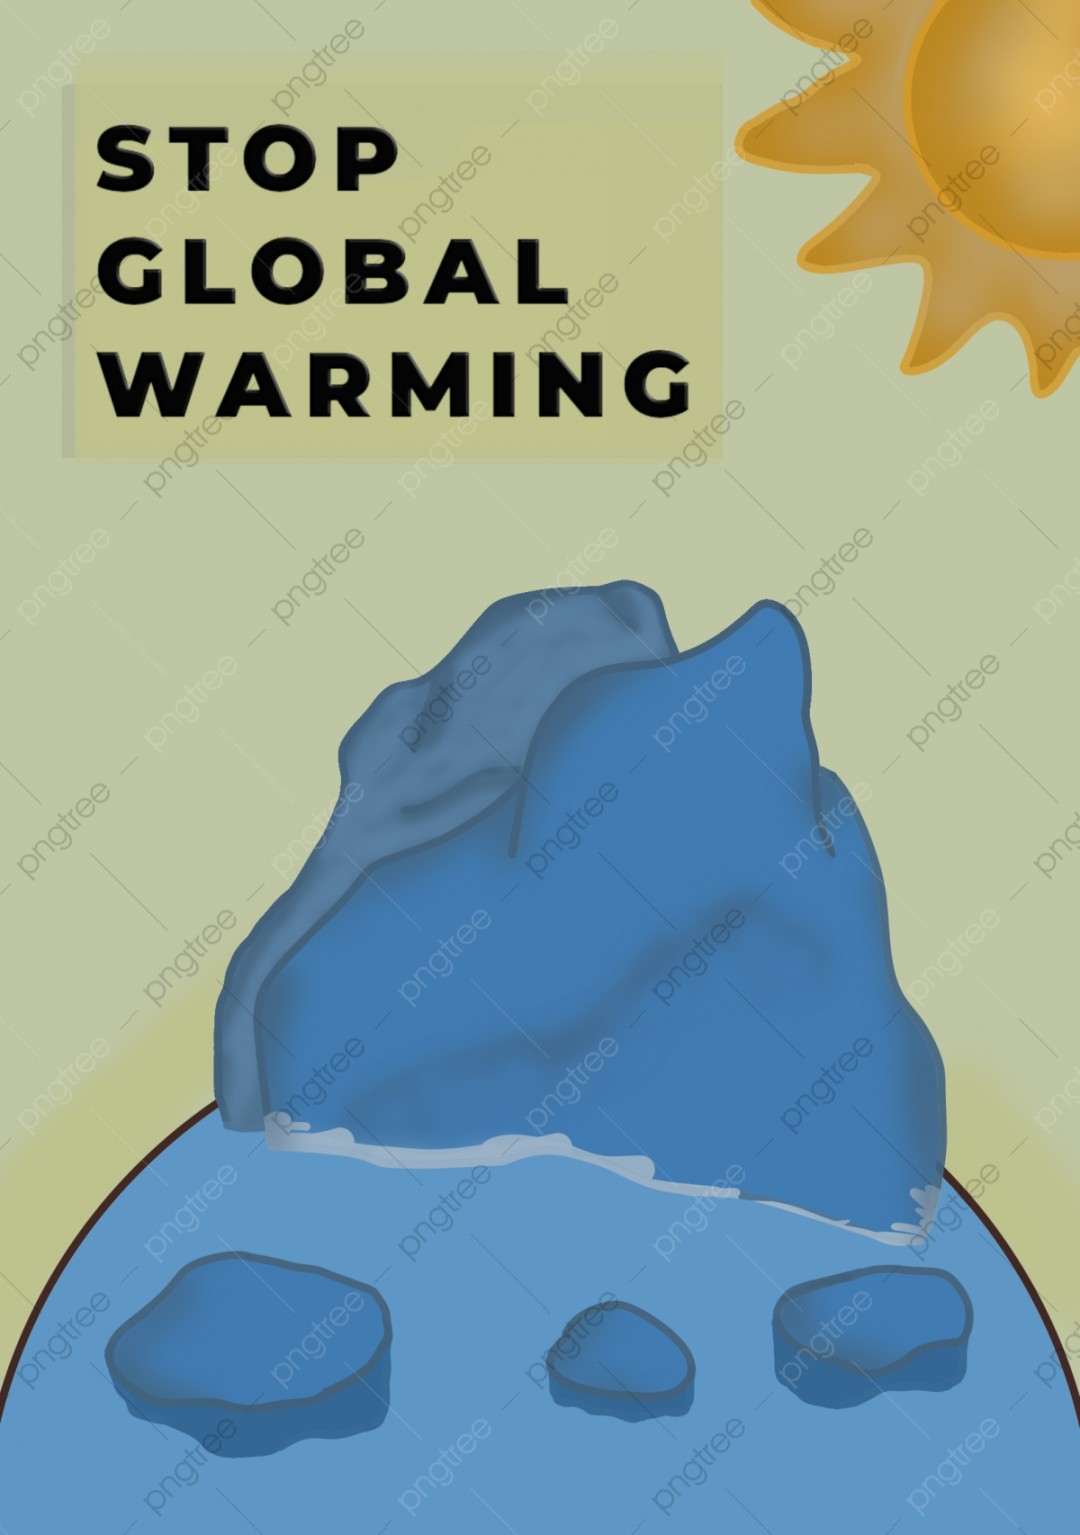 poster tentang stop global warming carton